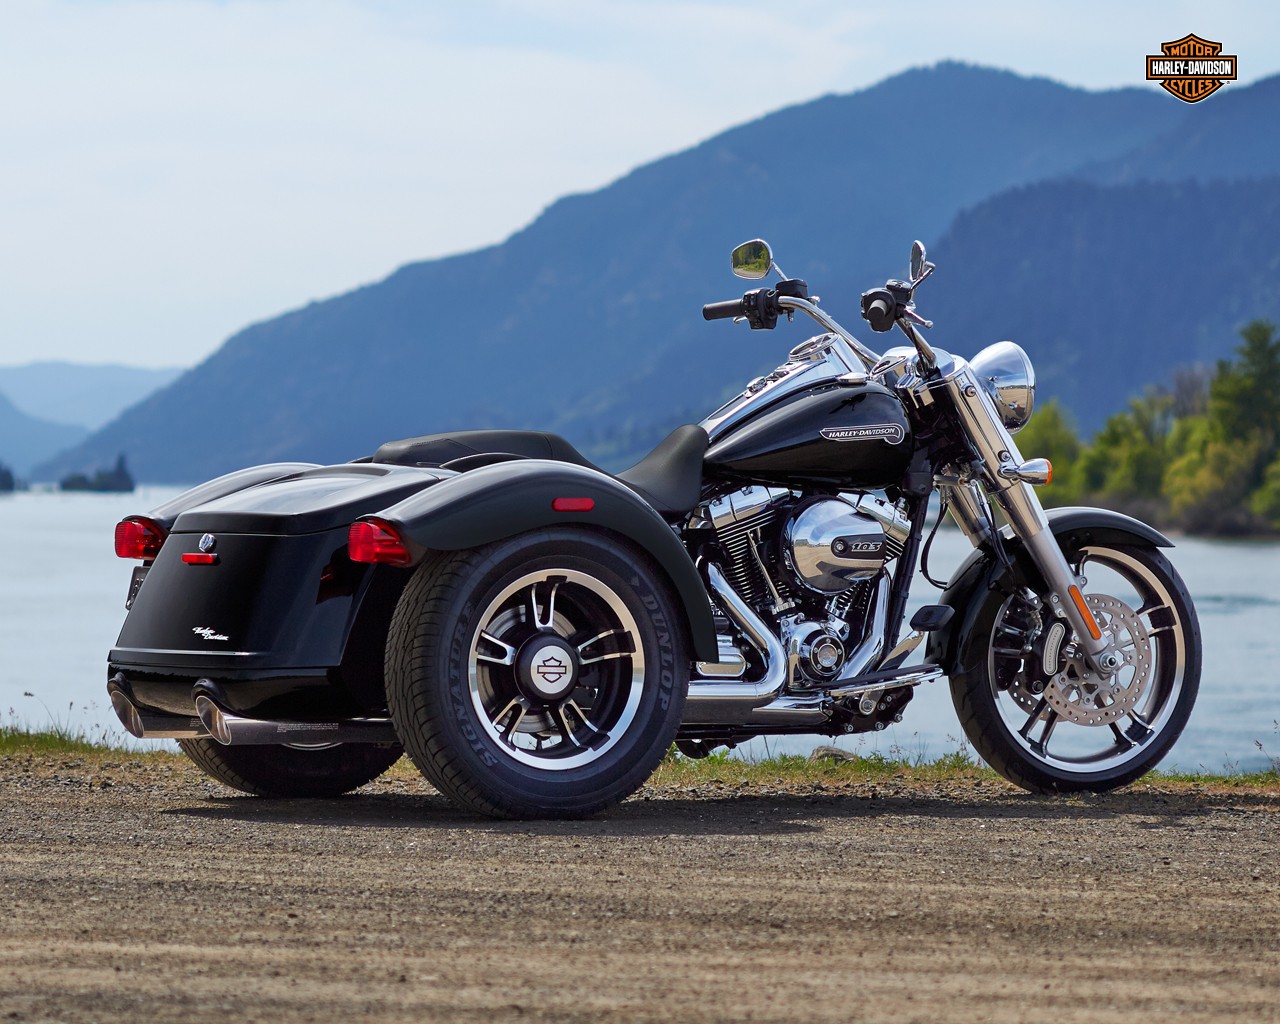 Harley-davidson 2015 Models Announced - Trike Harley Davidson 2016 , HD Wallpaper & Backgrounds